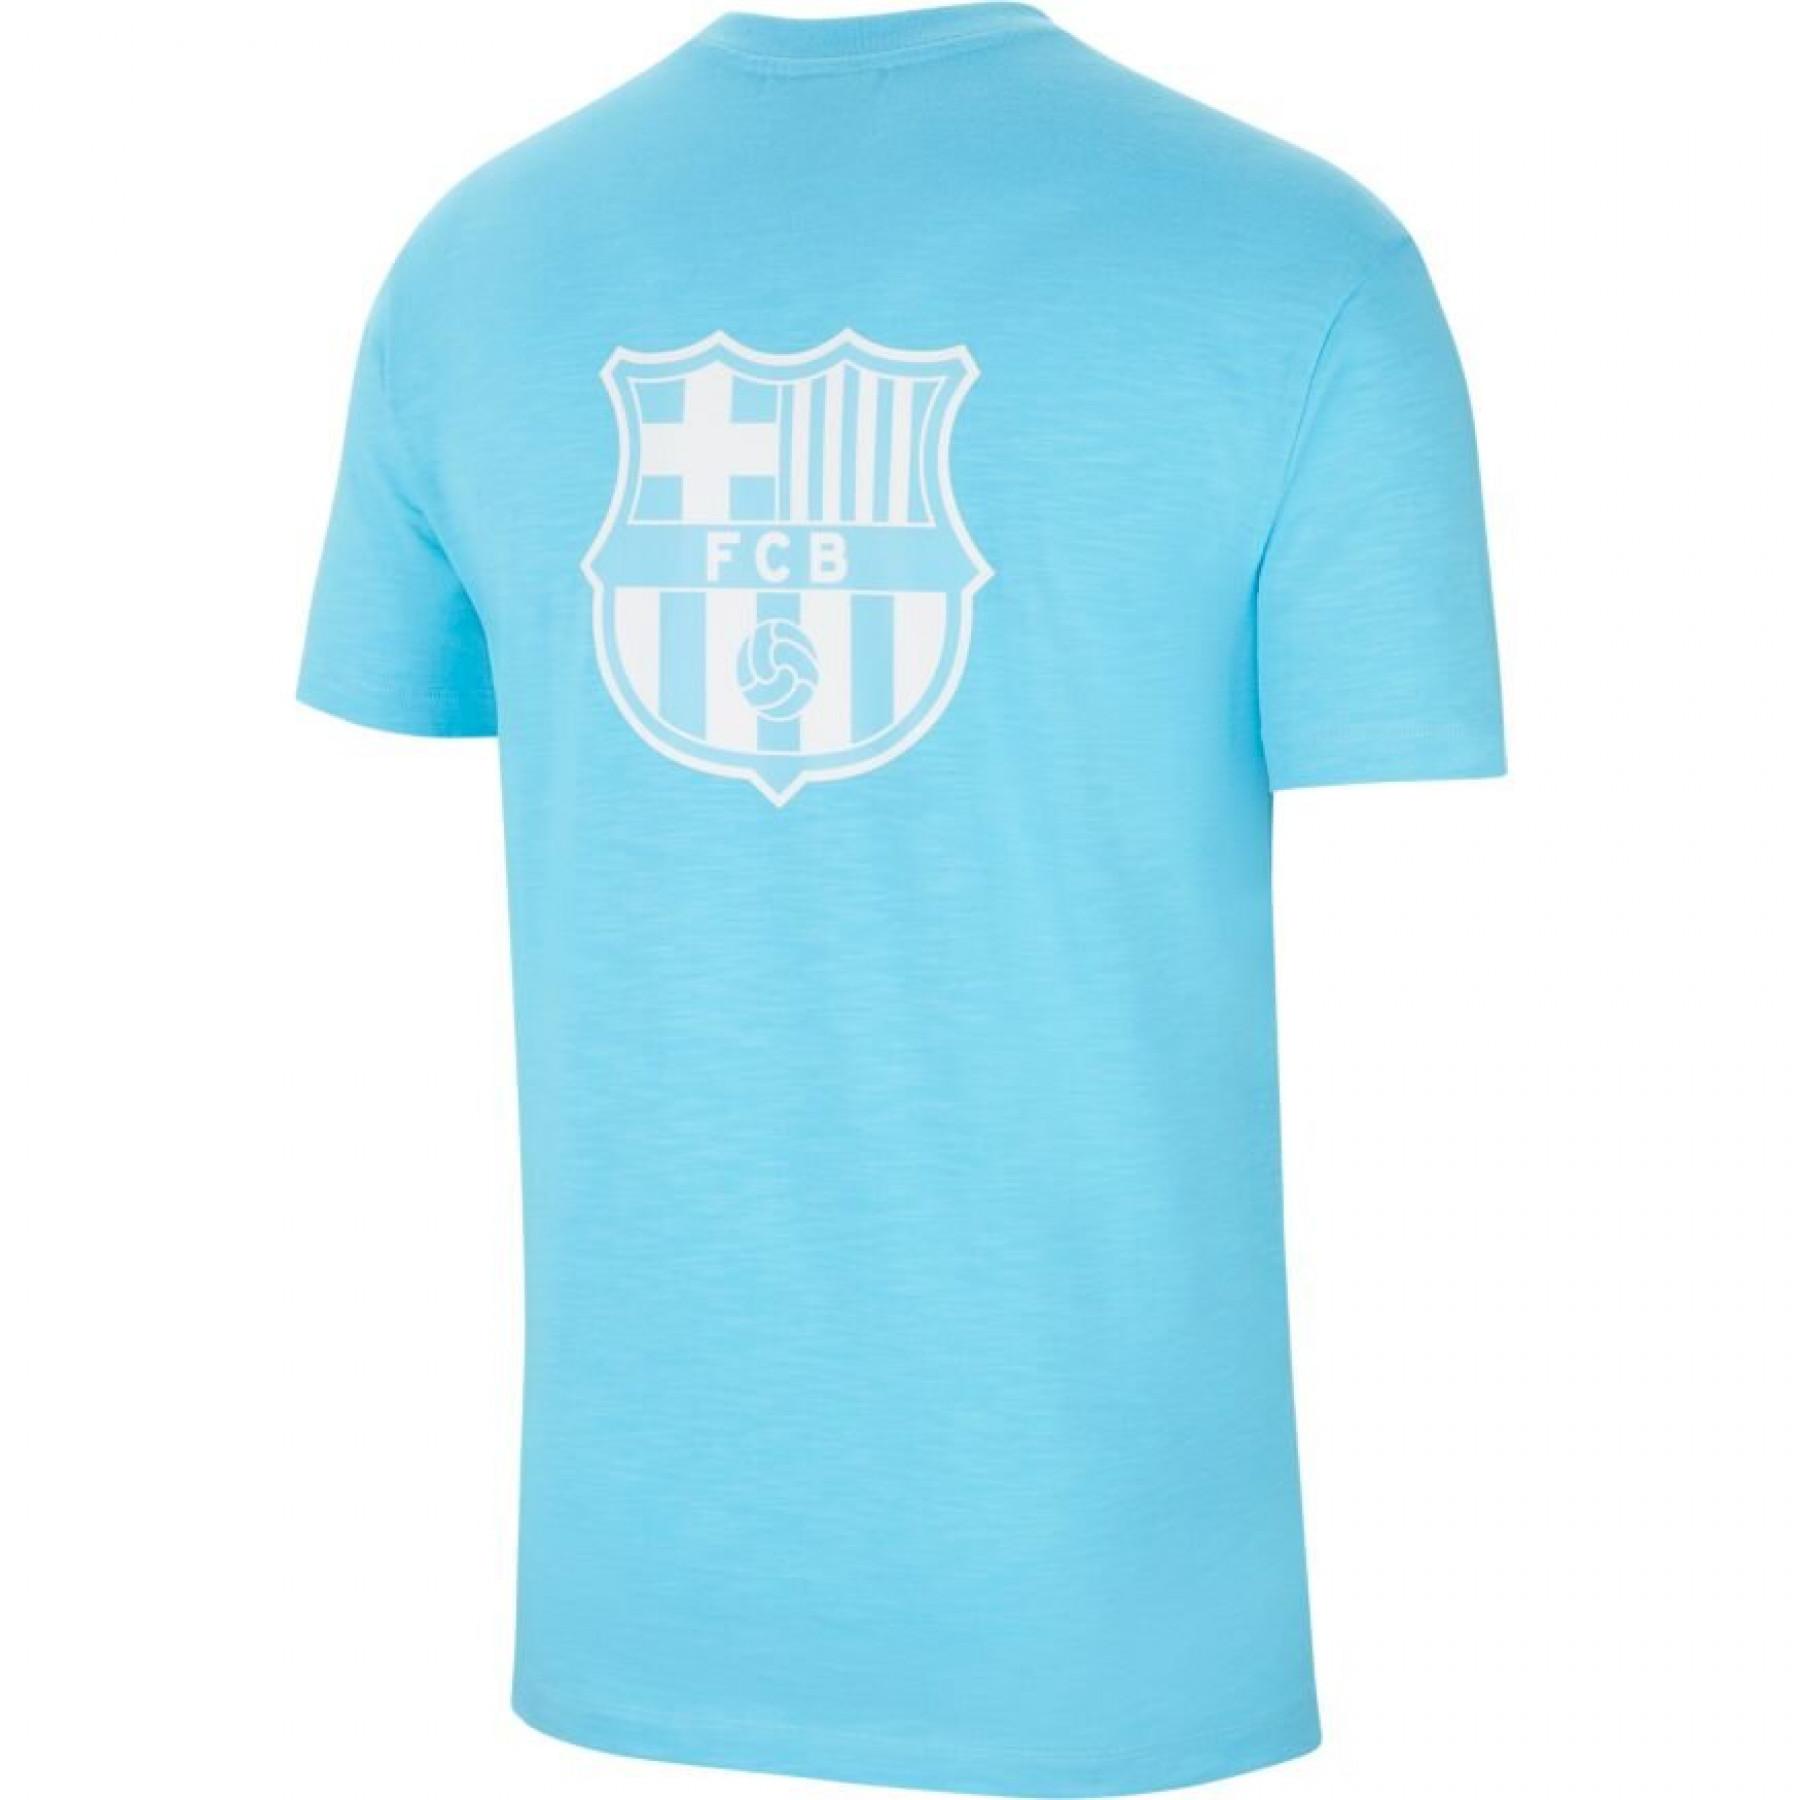 Barcelona sportswear t-shirt 2020/21